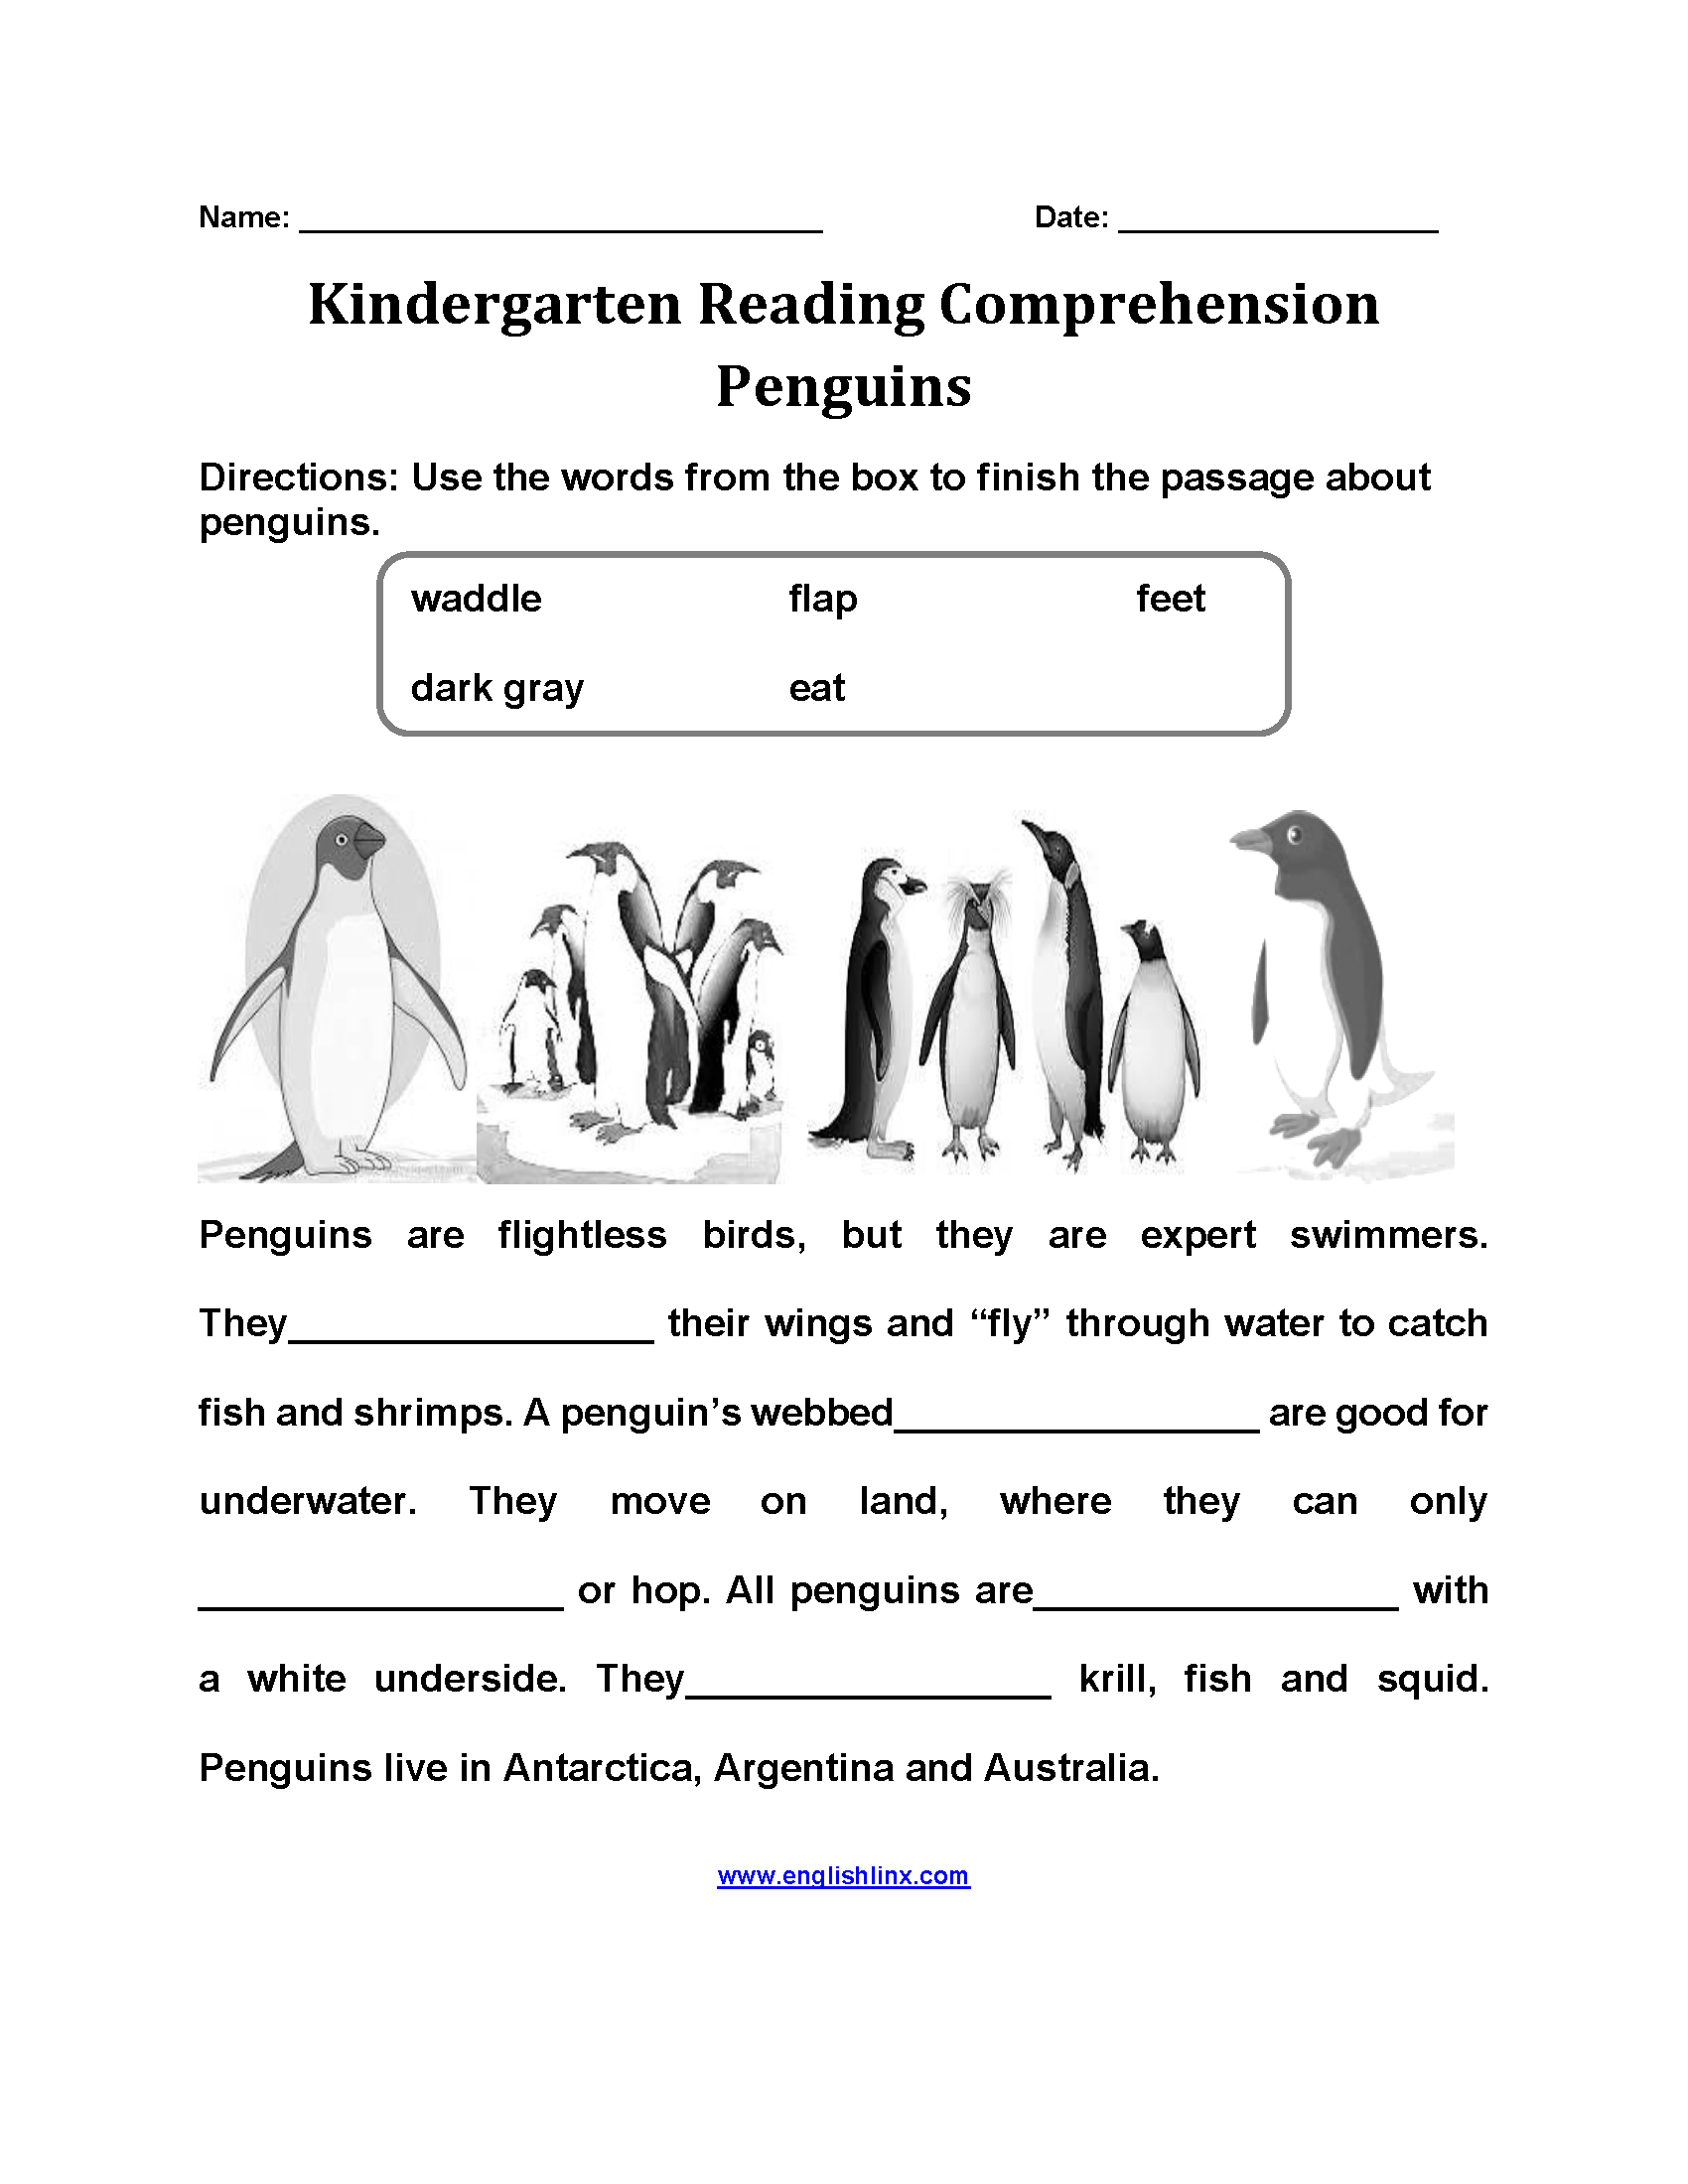 Penguins Kindergarten Reading Comprehension Worksheets